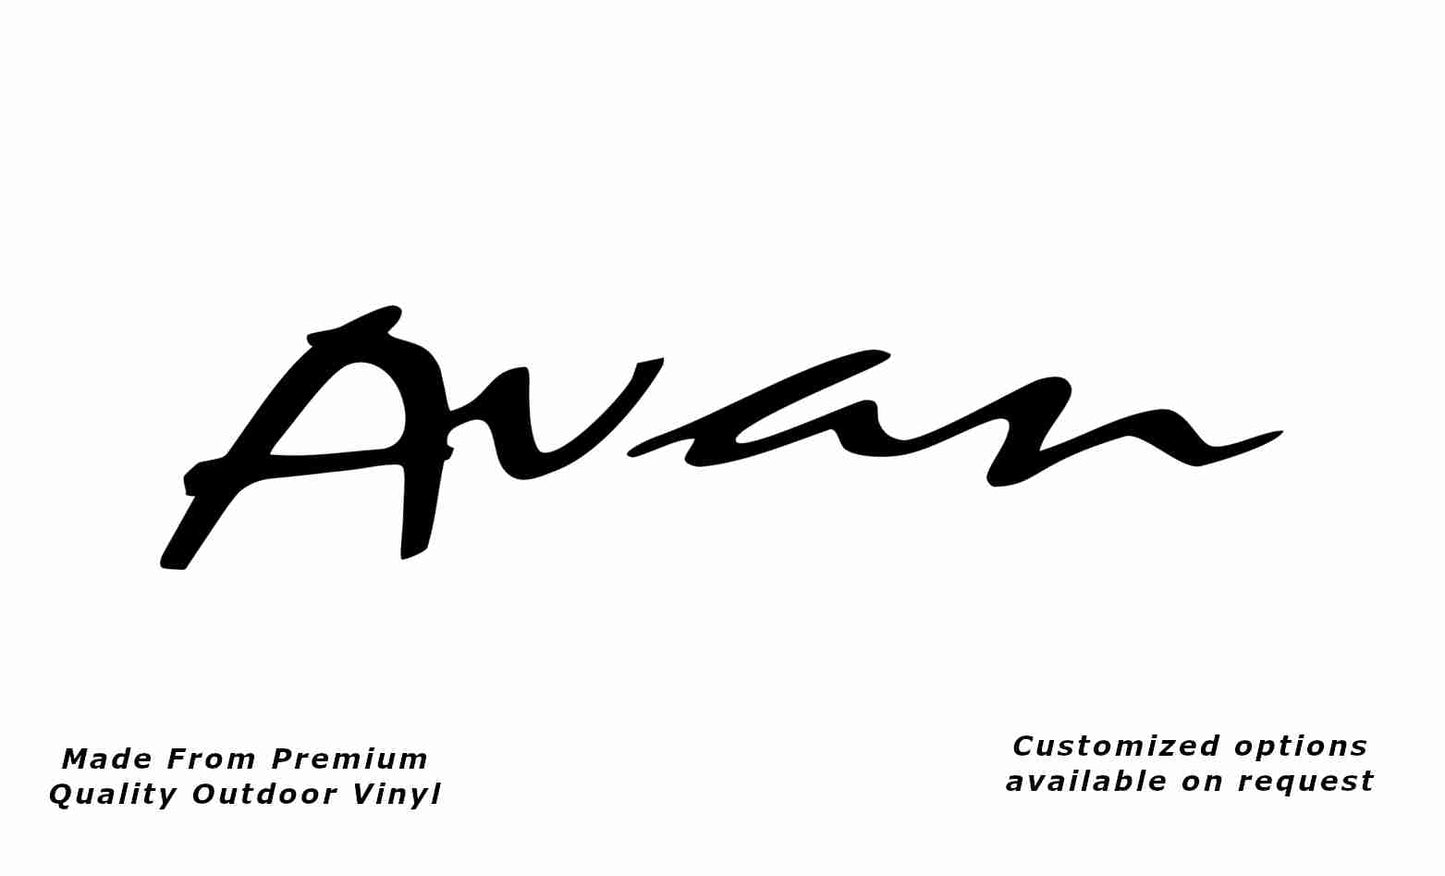 Avan caravan replacement vinyl decal sticker in black.